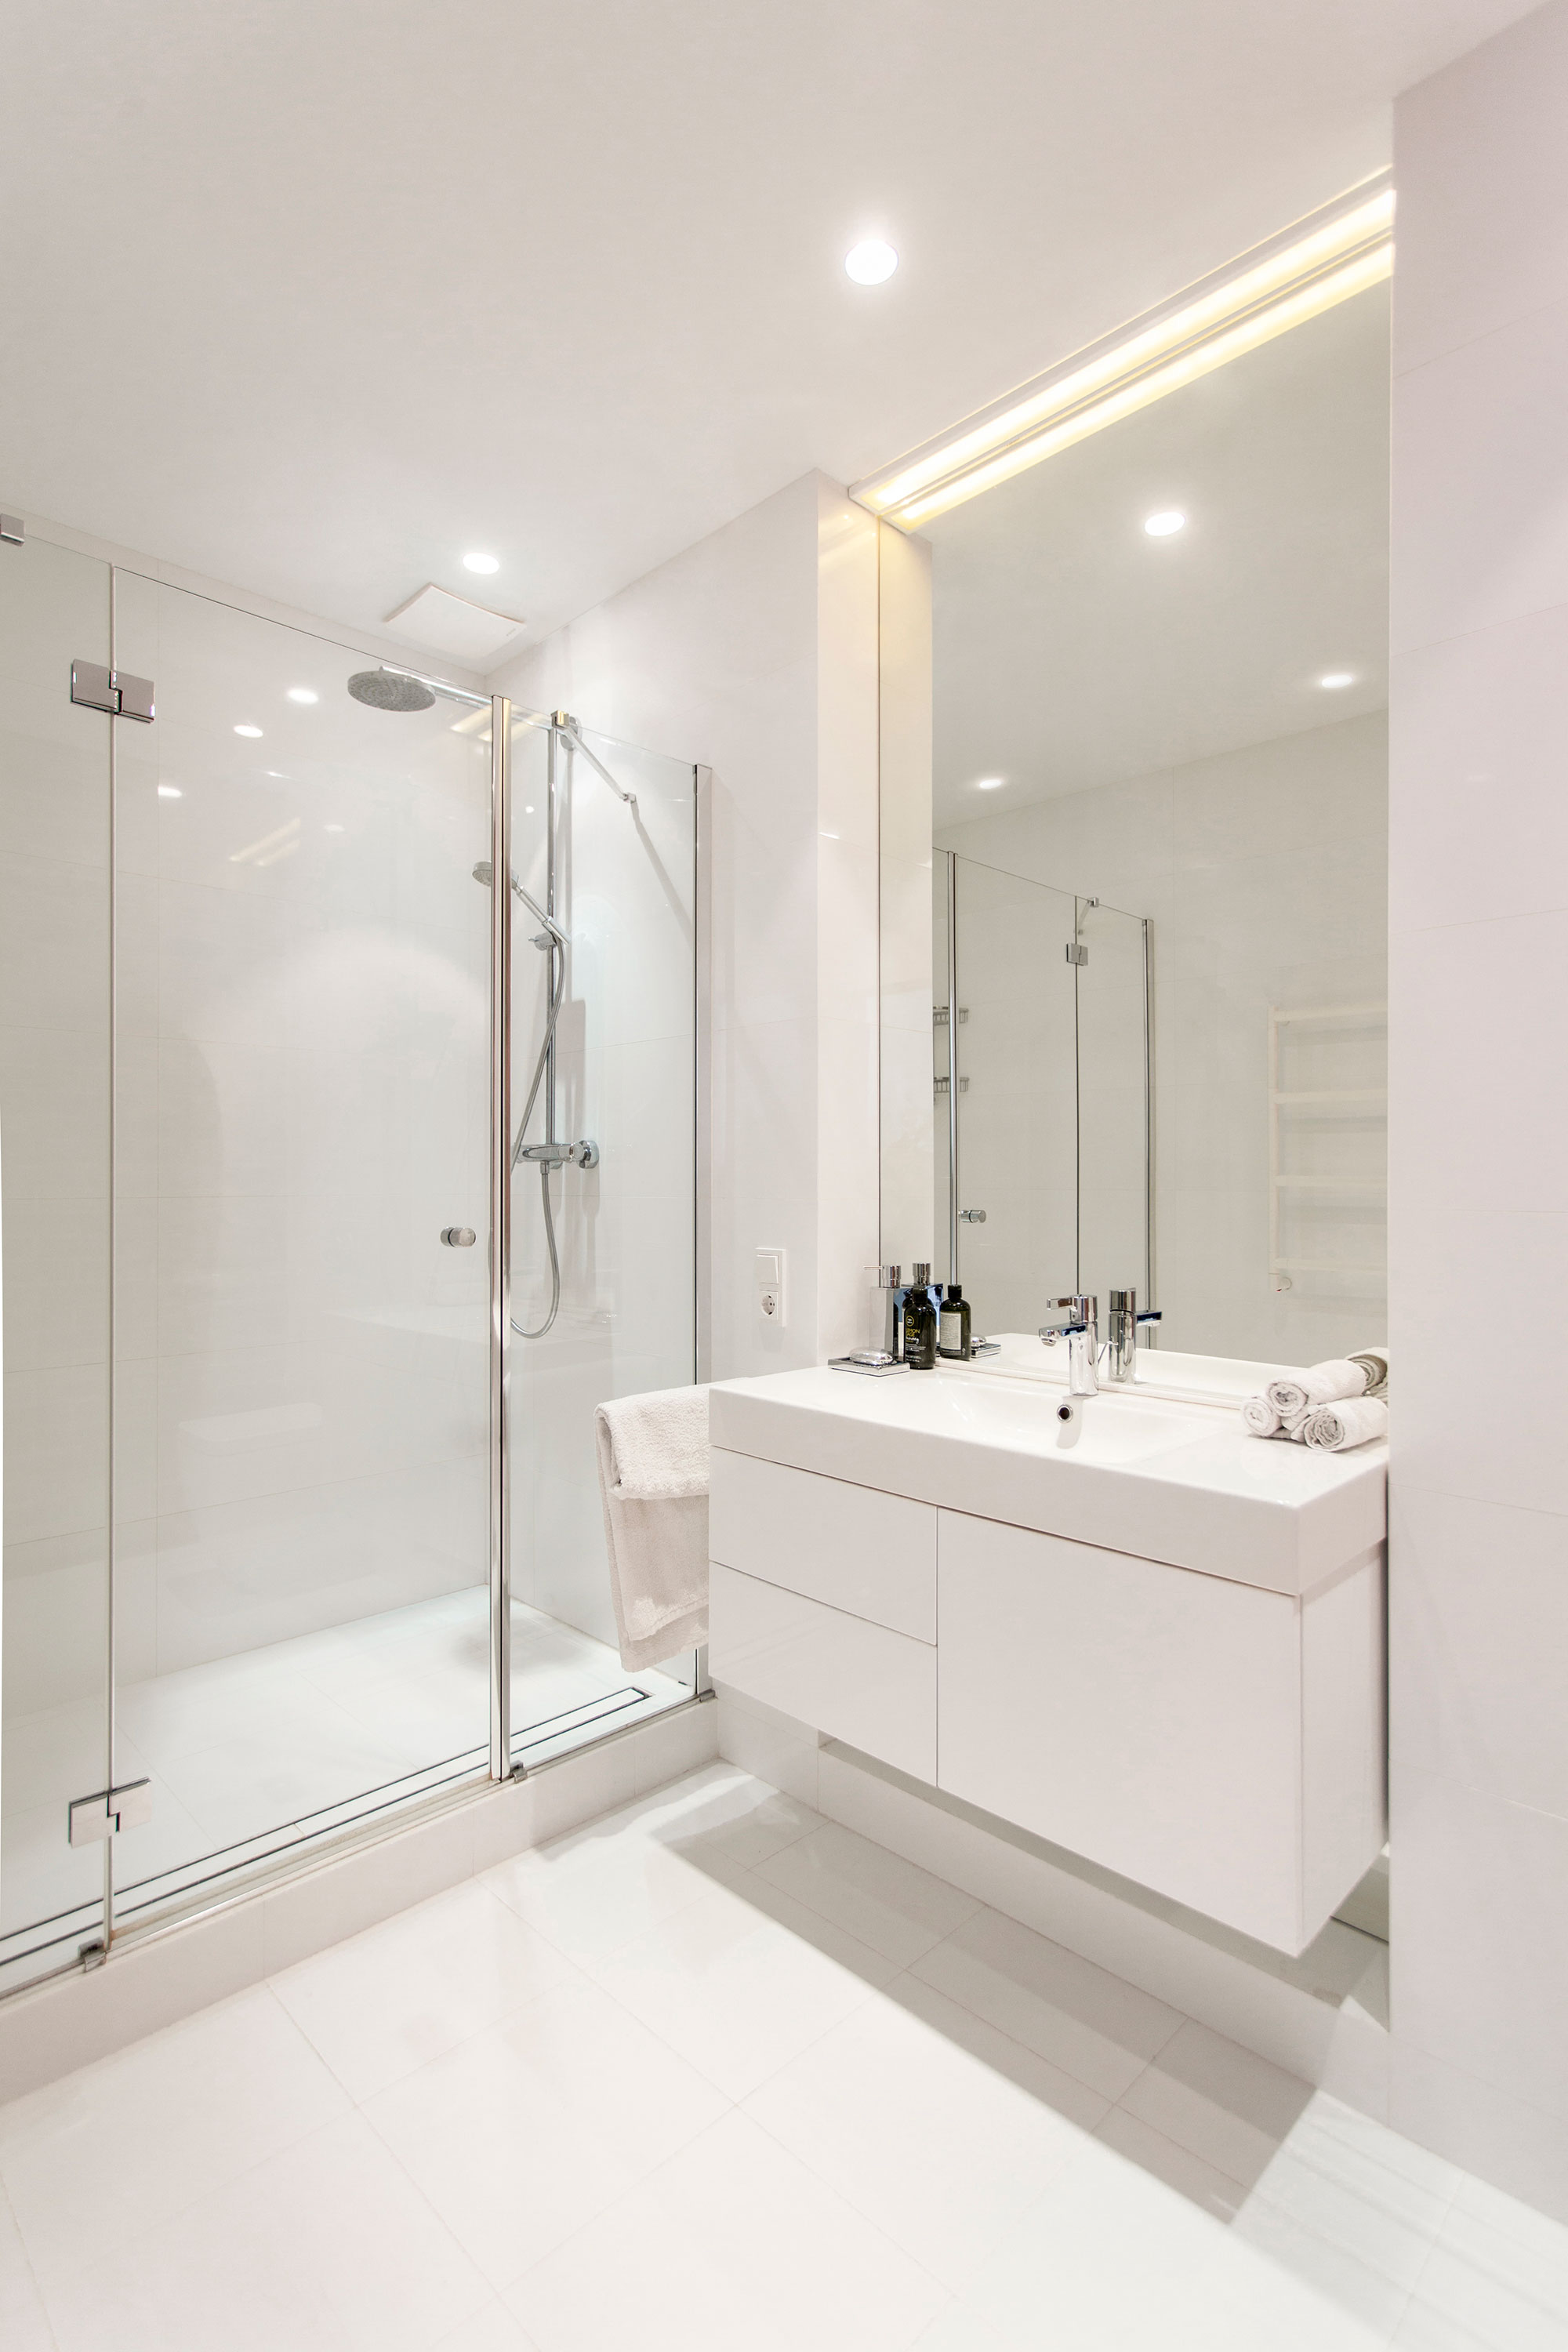 白色的卫生间呈现出纯净清爽之感,干湿分离的隔断设计清透又实用.